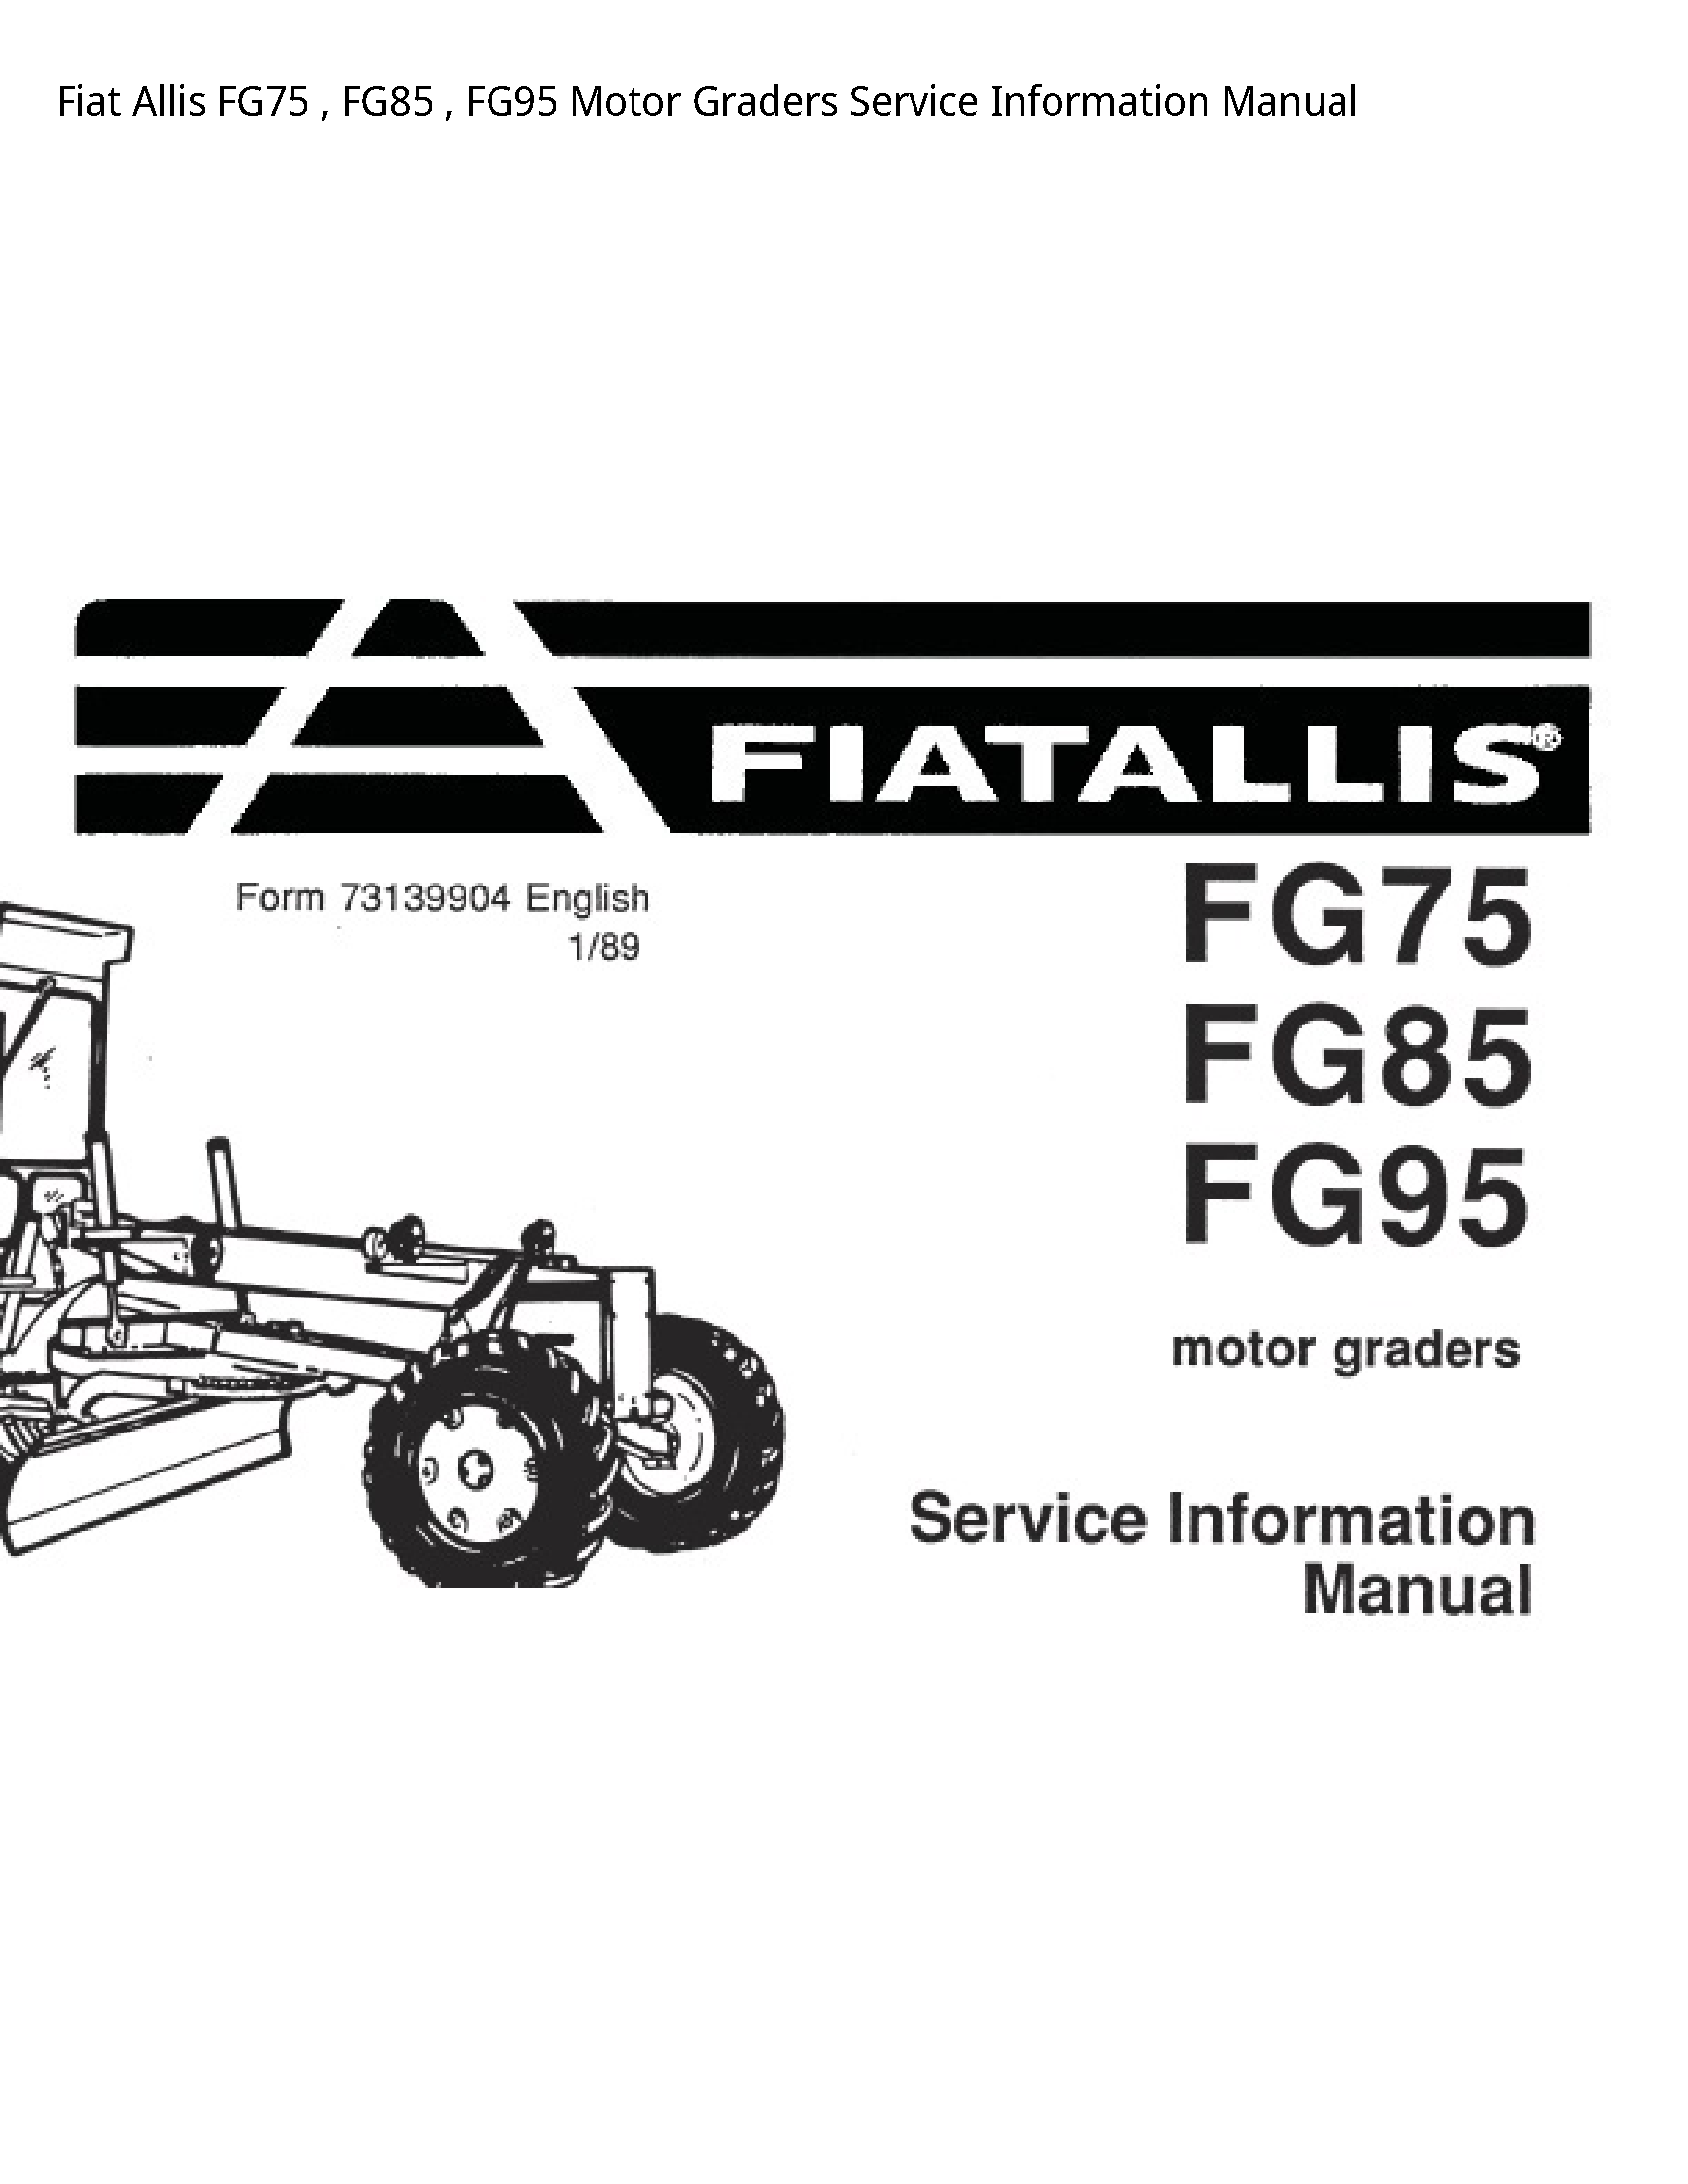 Fiat Allis FG75 Motor Graders Service Information manual